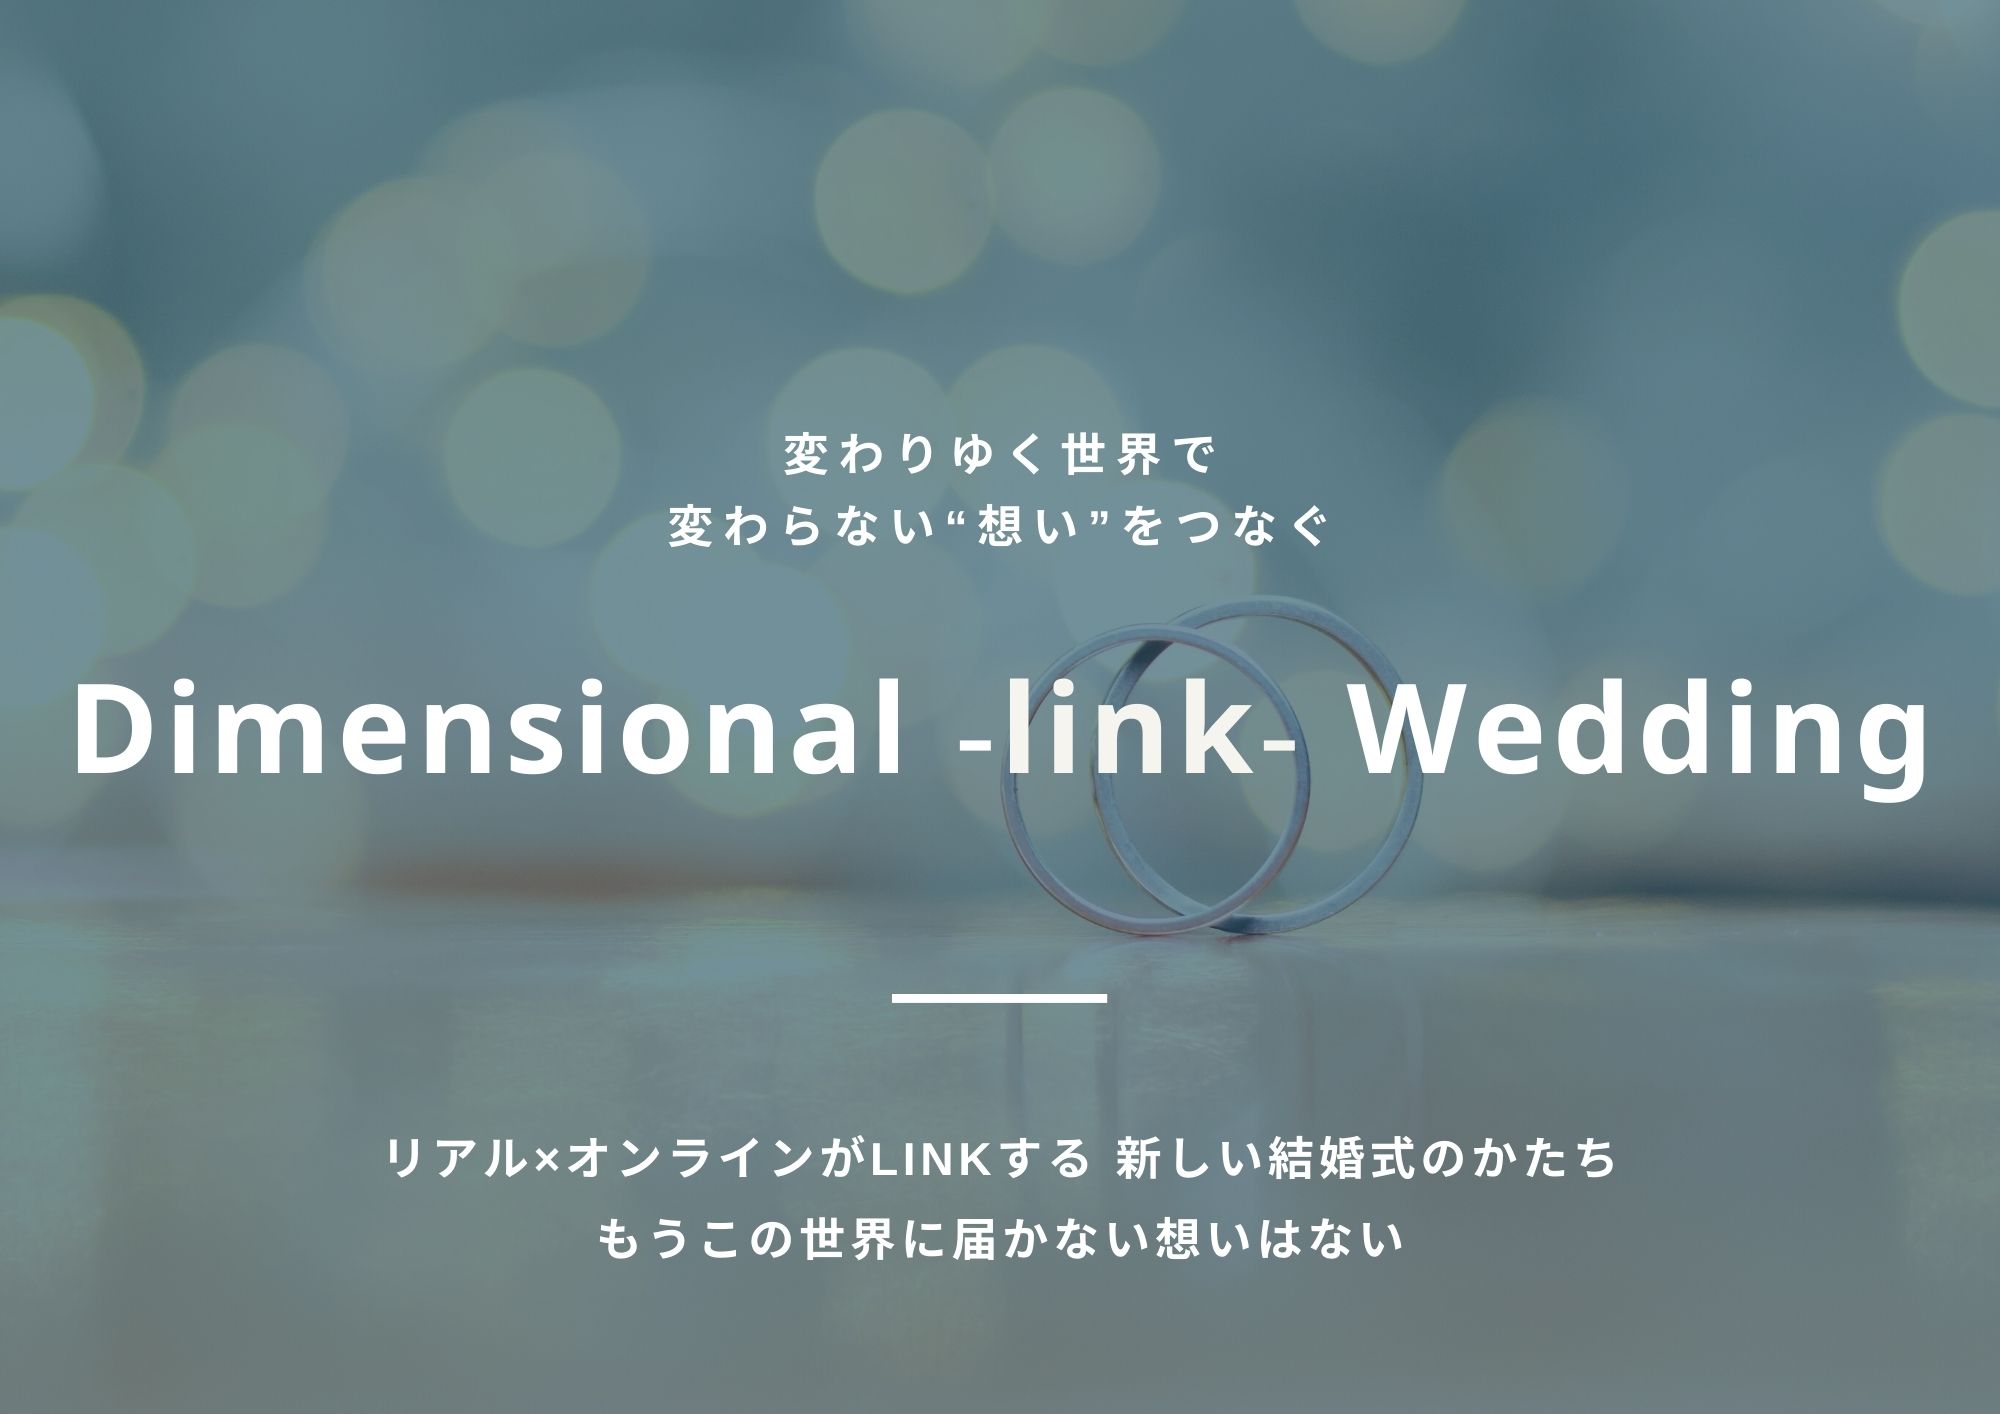 リアル オンラインがlinkする新しい結婚式のかたち 変わりゆく世界で 変わらない 想い をつなぐ Dimensional Link Wedding 株式会社エスクリのプレスリリース